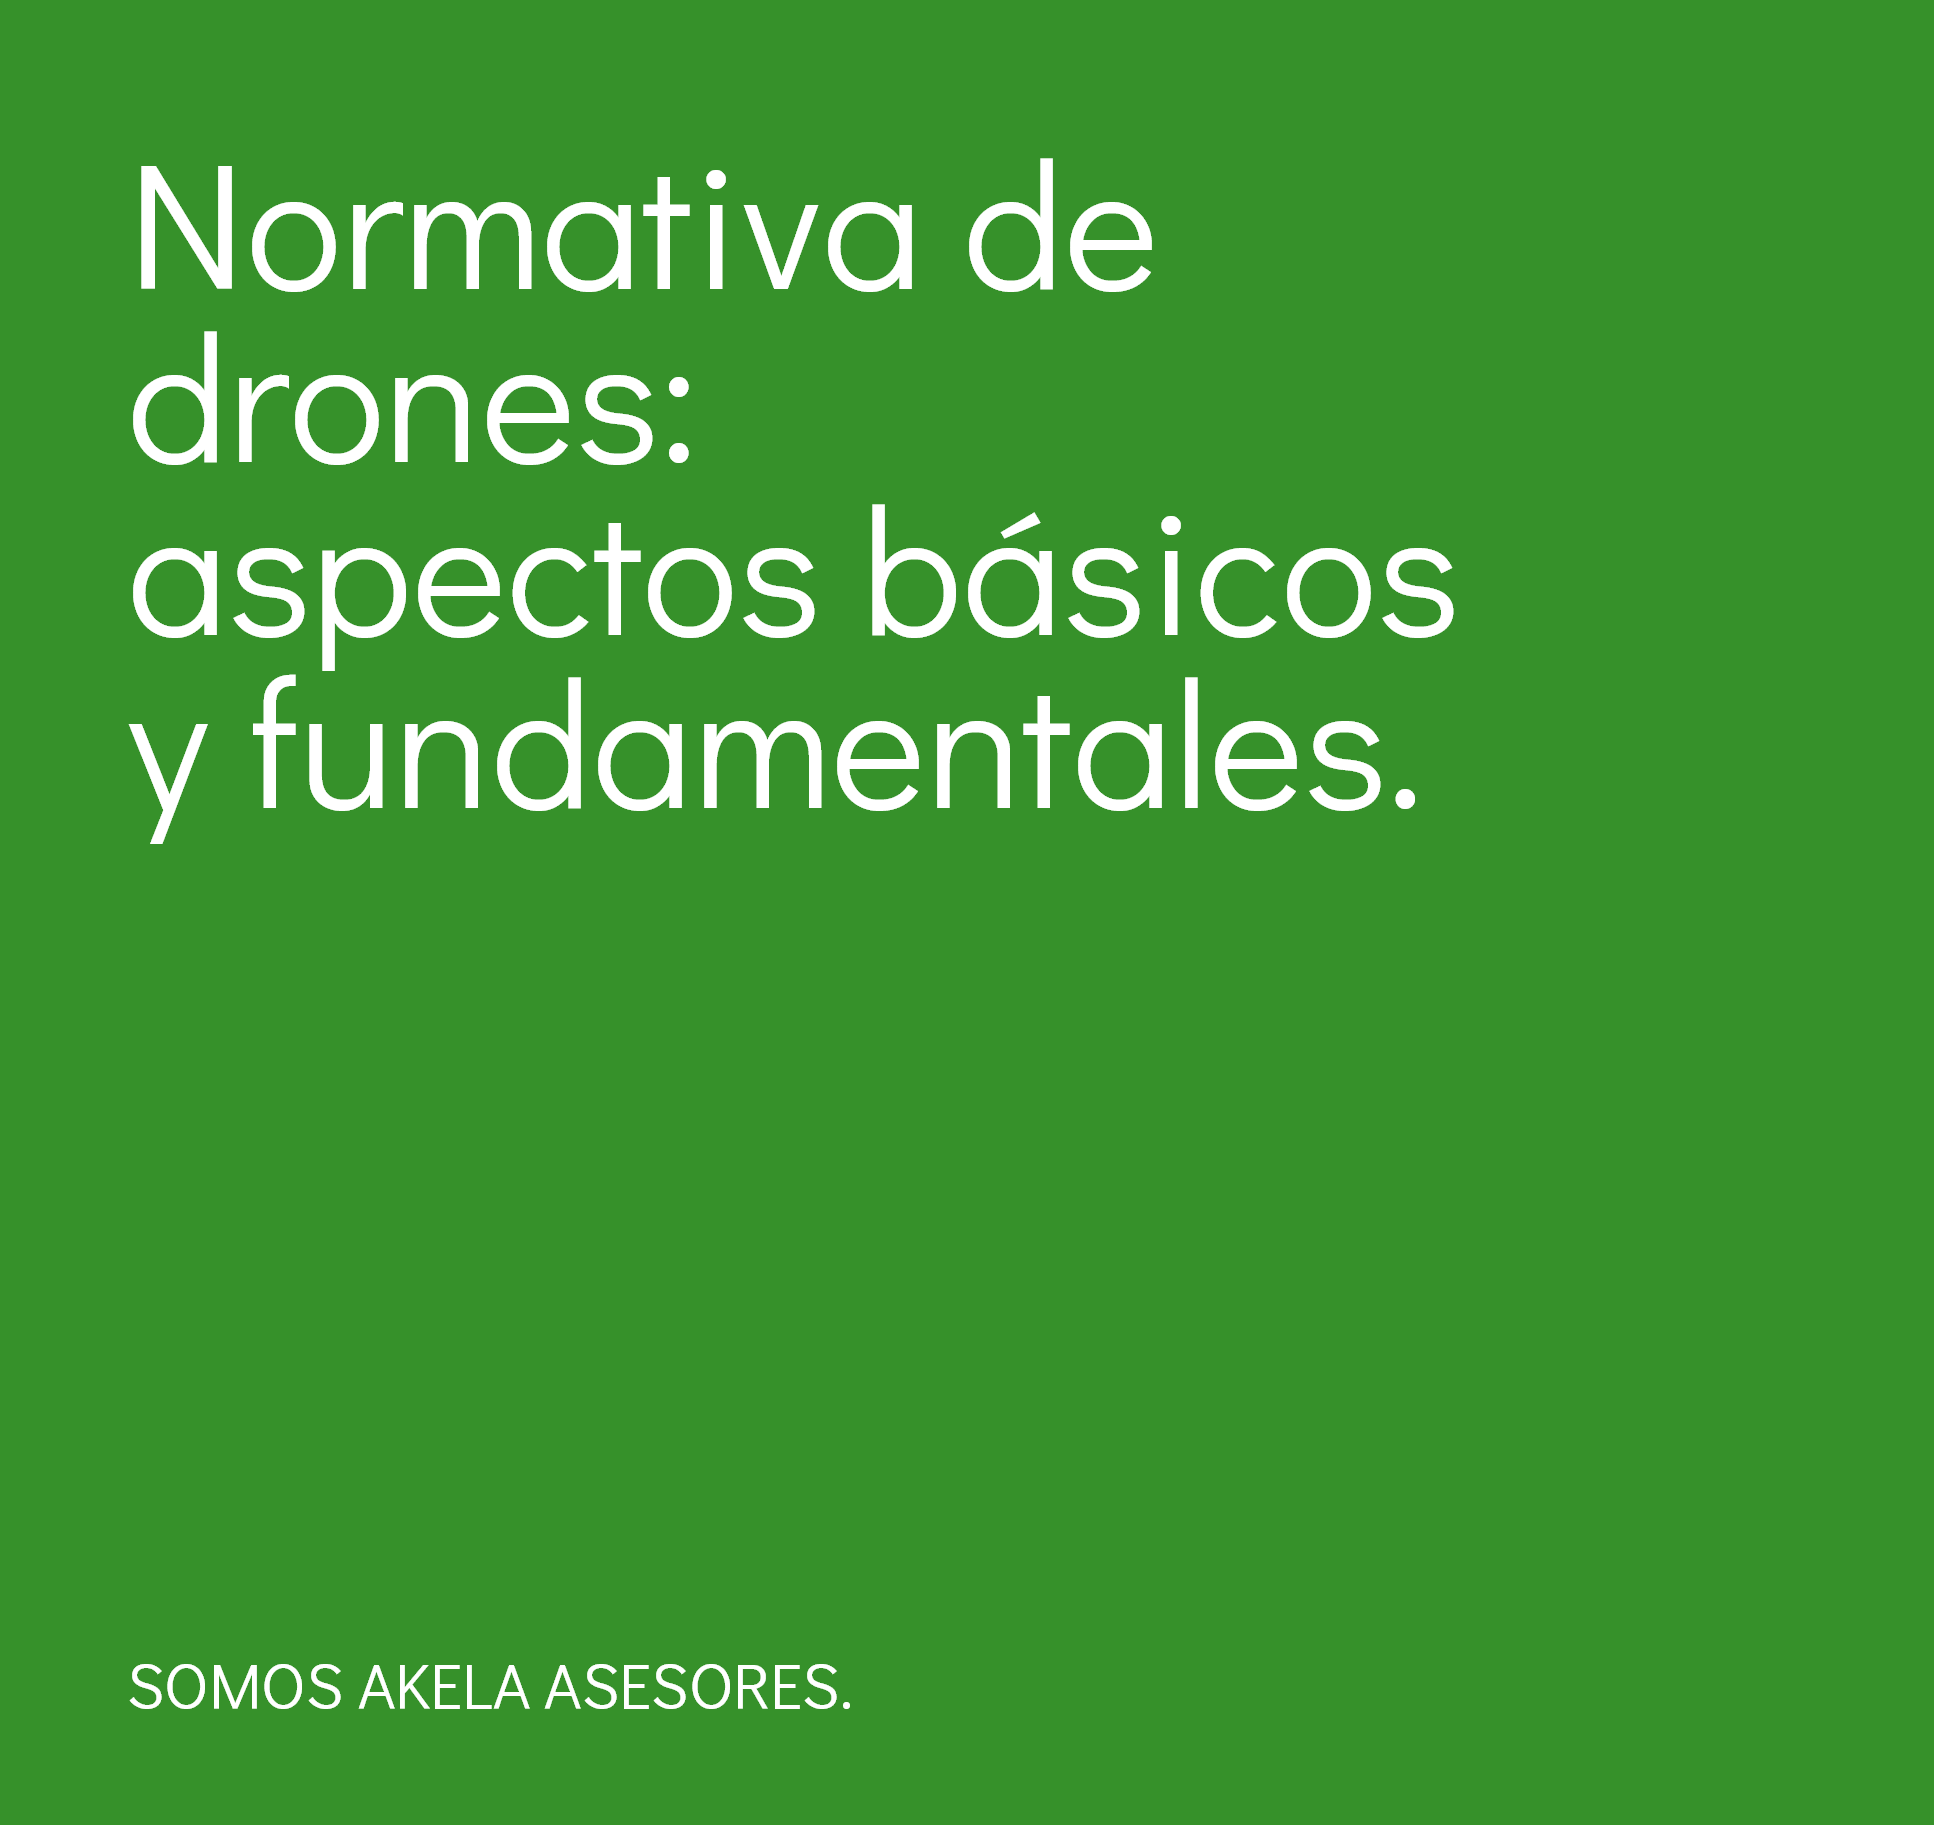 En este momento estás viendo Normativa de drones: aspectos básicos y fundamentales